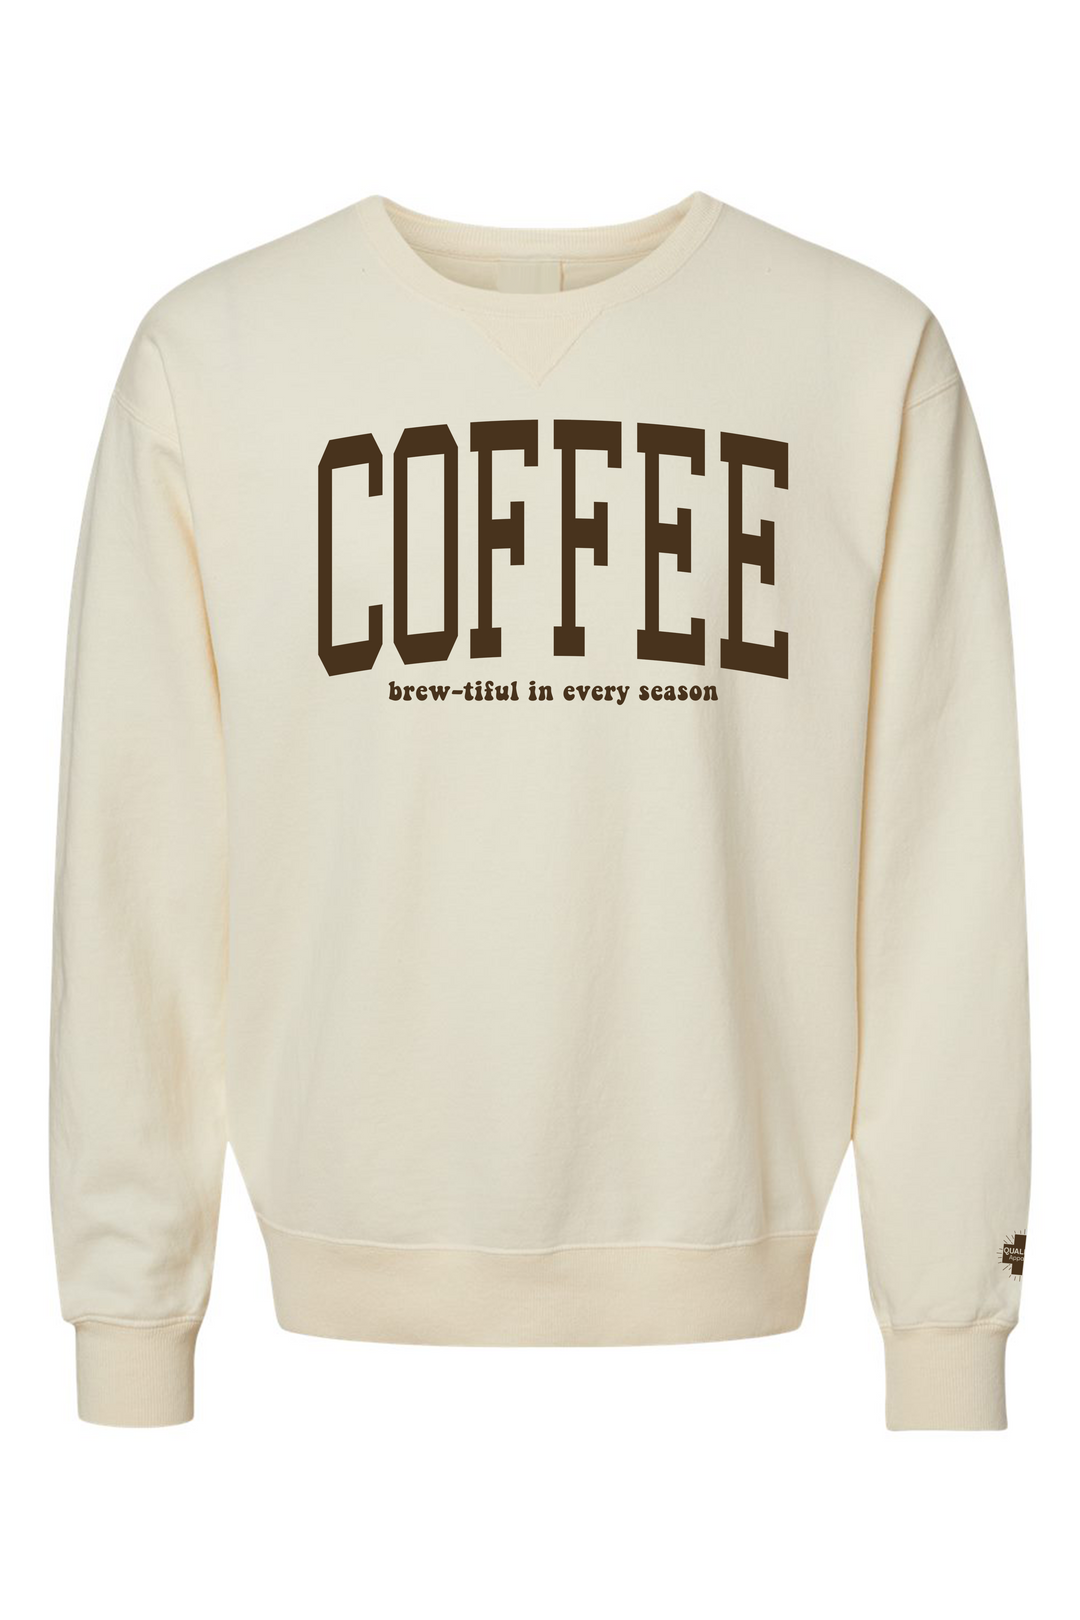 Brew-tiful Coffee Sweatshirt